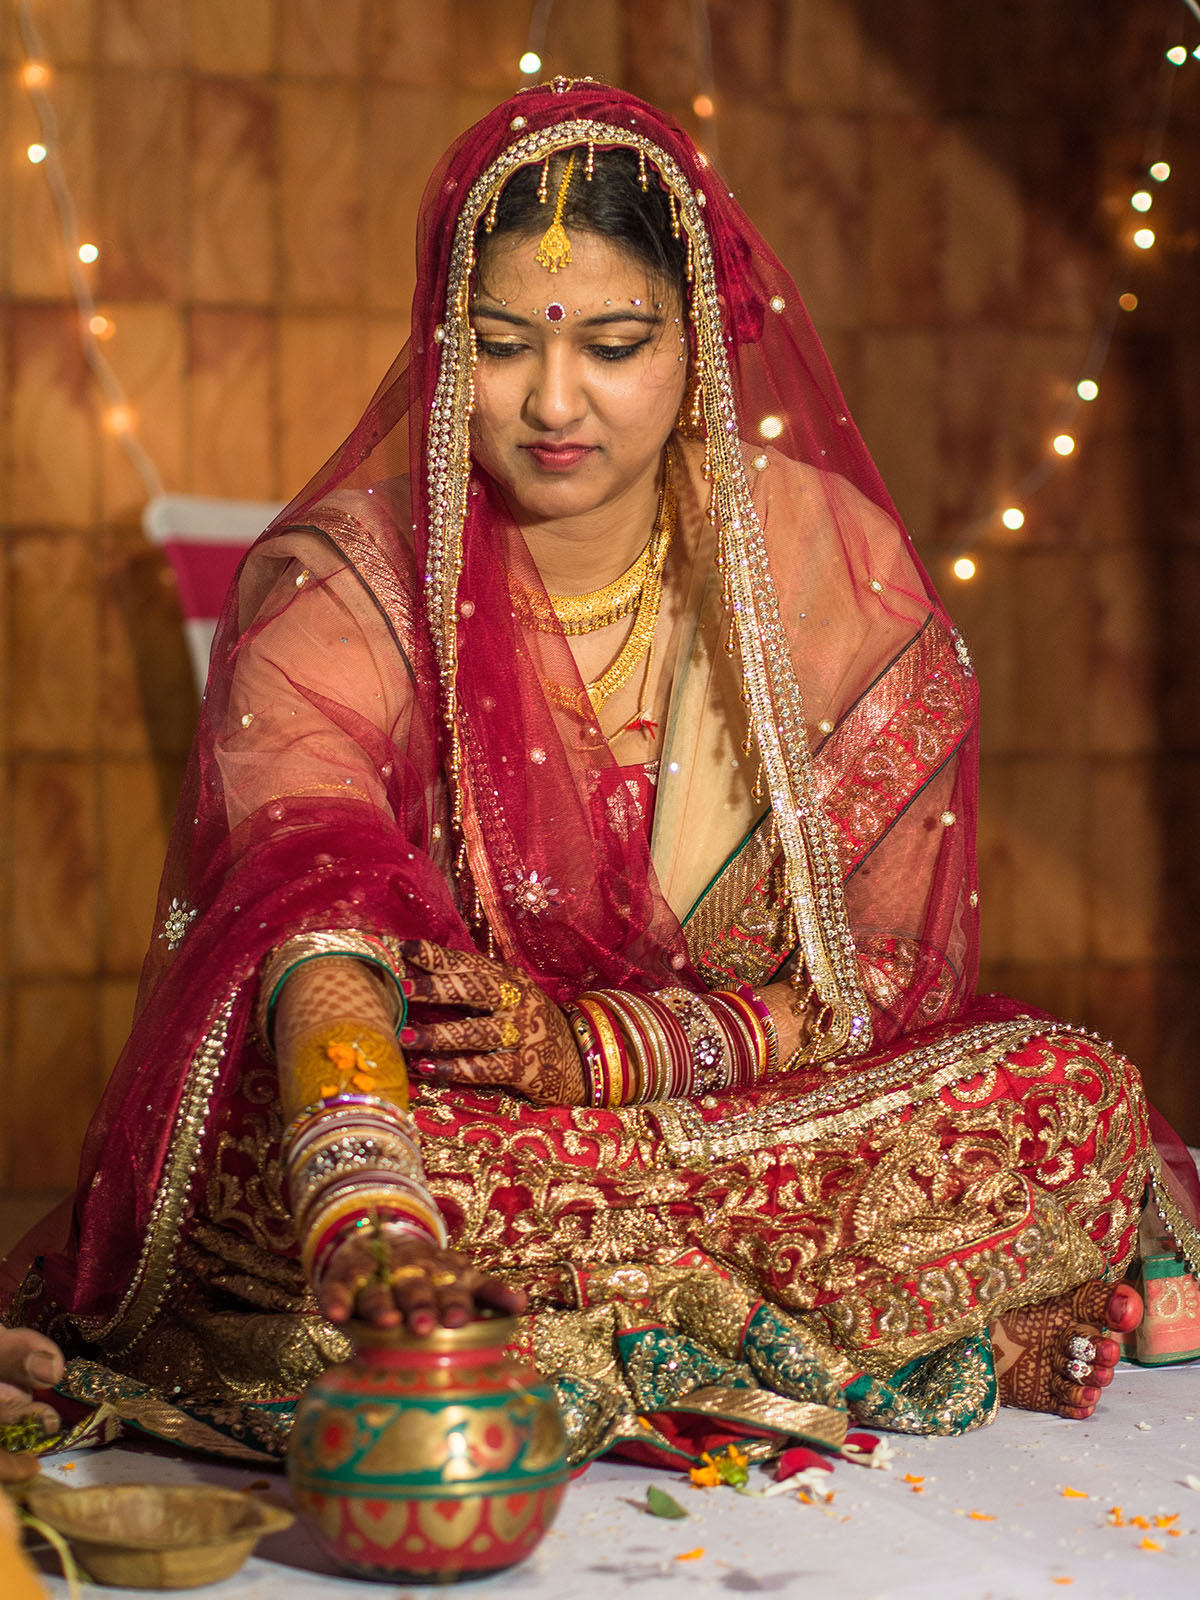 india_wedding_bride